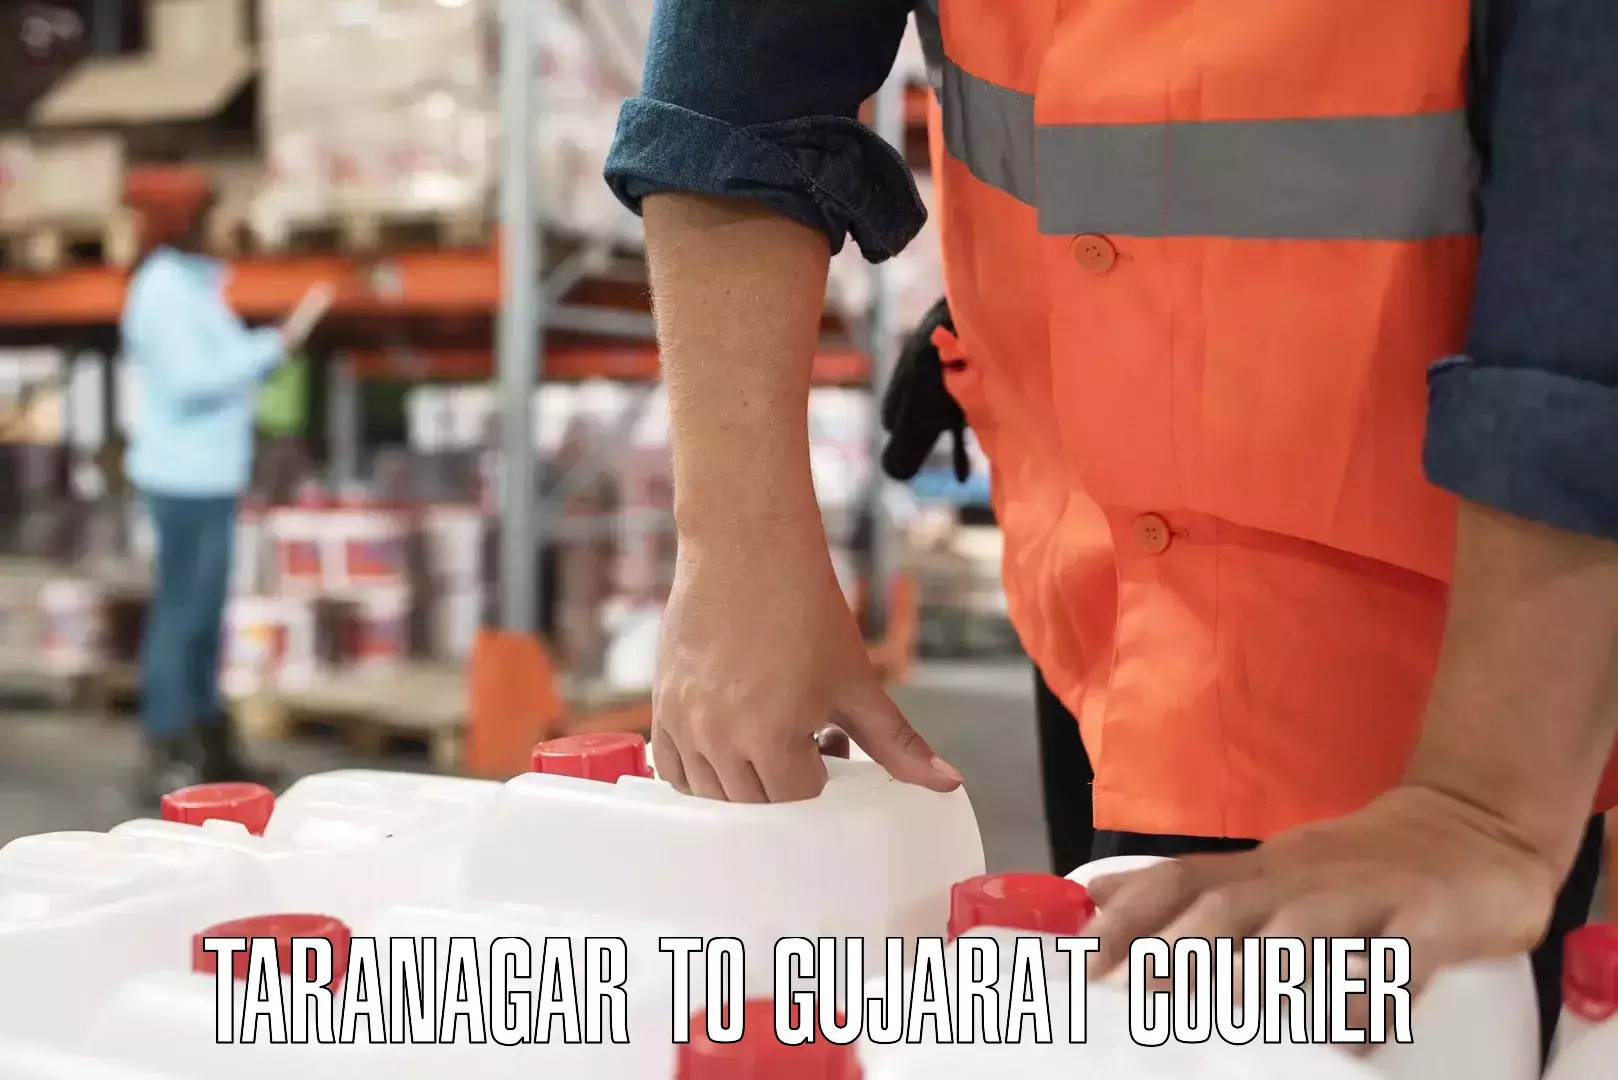 Regular parcel service Taranagar to Gujarat